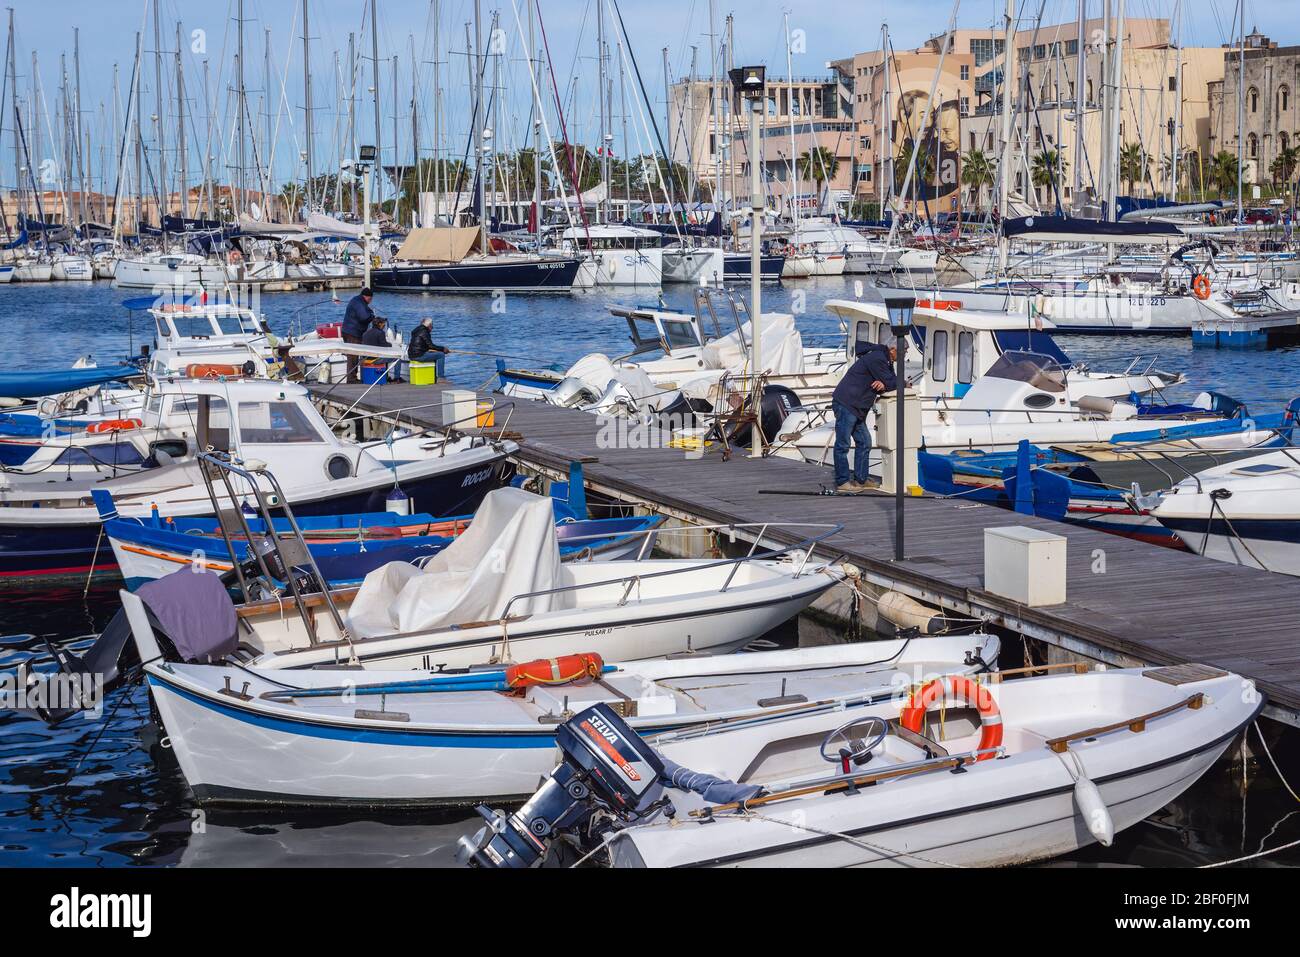 Bateaux dans la région de la Cala de Port de Palerme ville du sud de l'Italie, la capitale de la région autonome de Sicile Banque D'Images